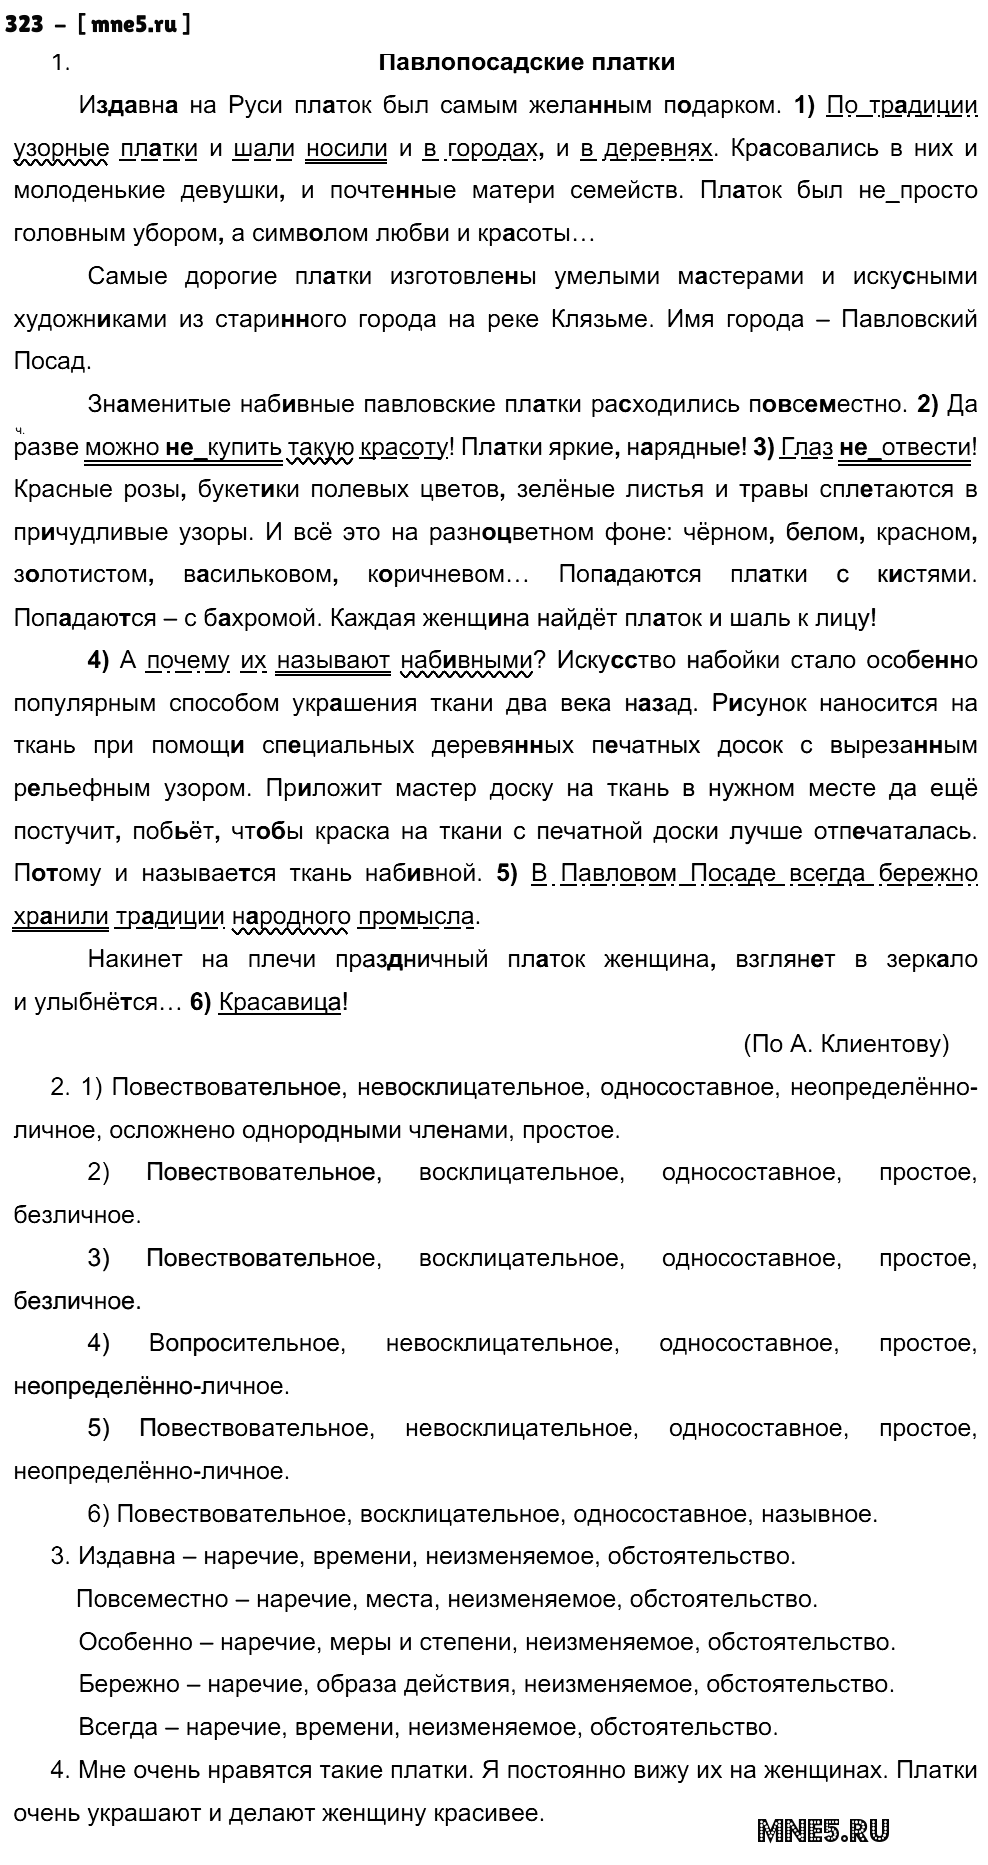 ГДЗ Русский язык 9 класс - 323